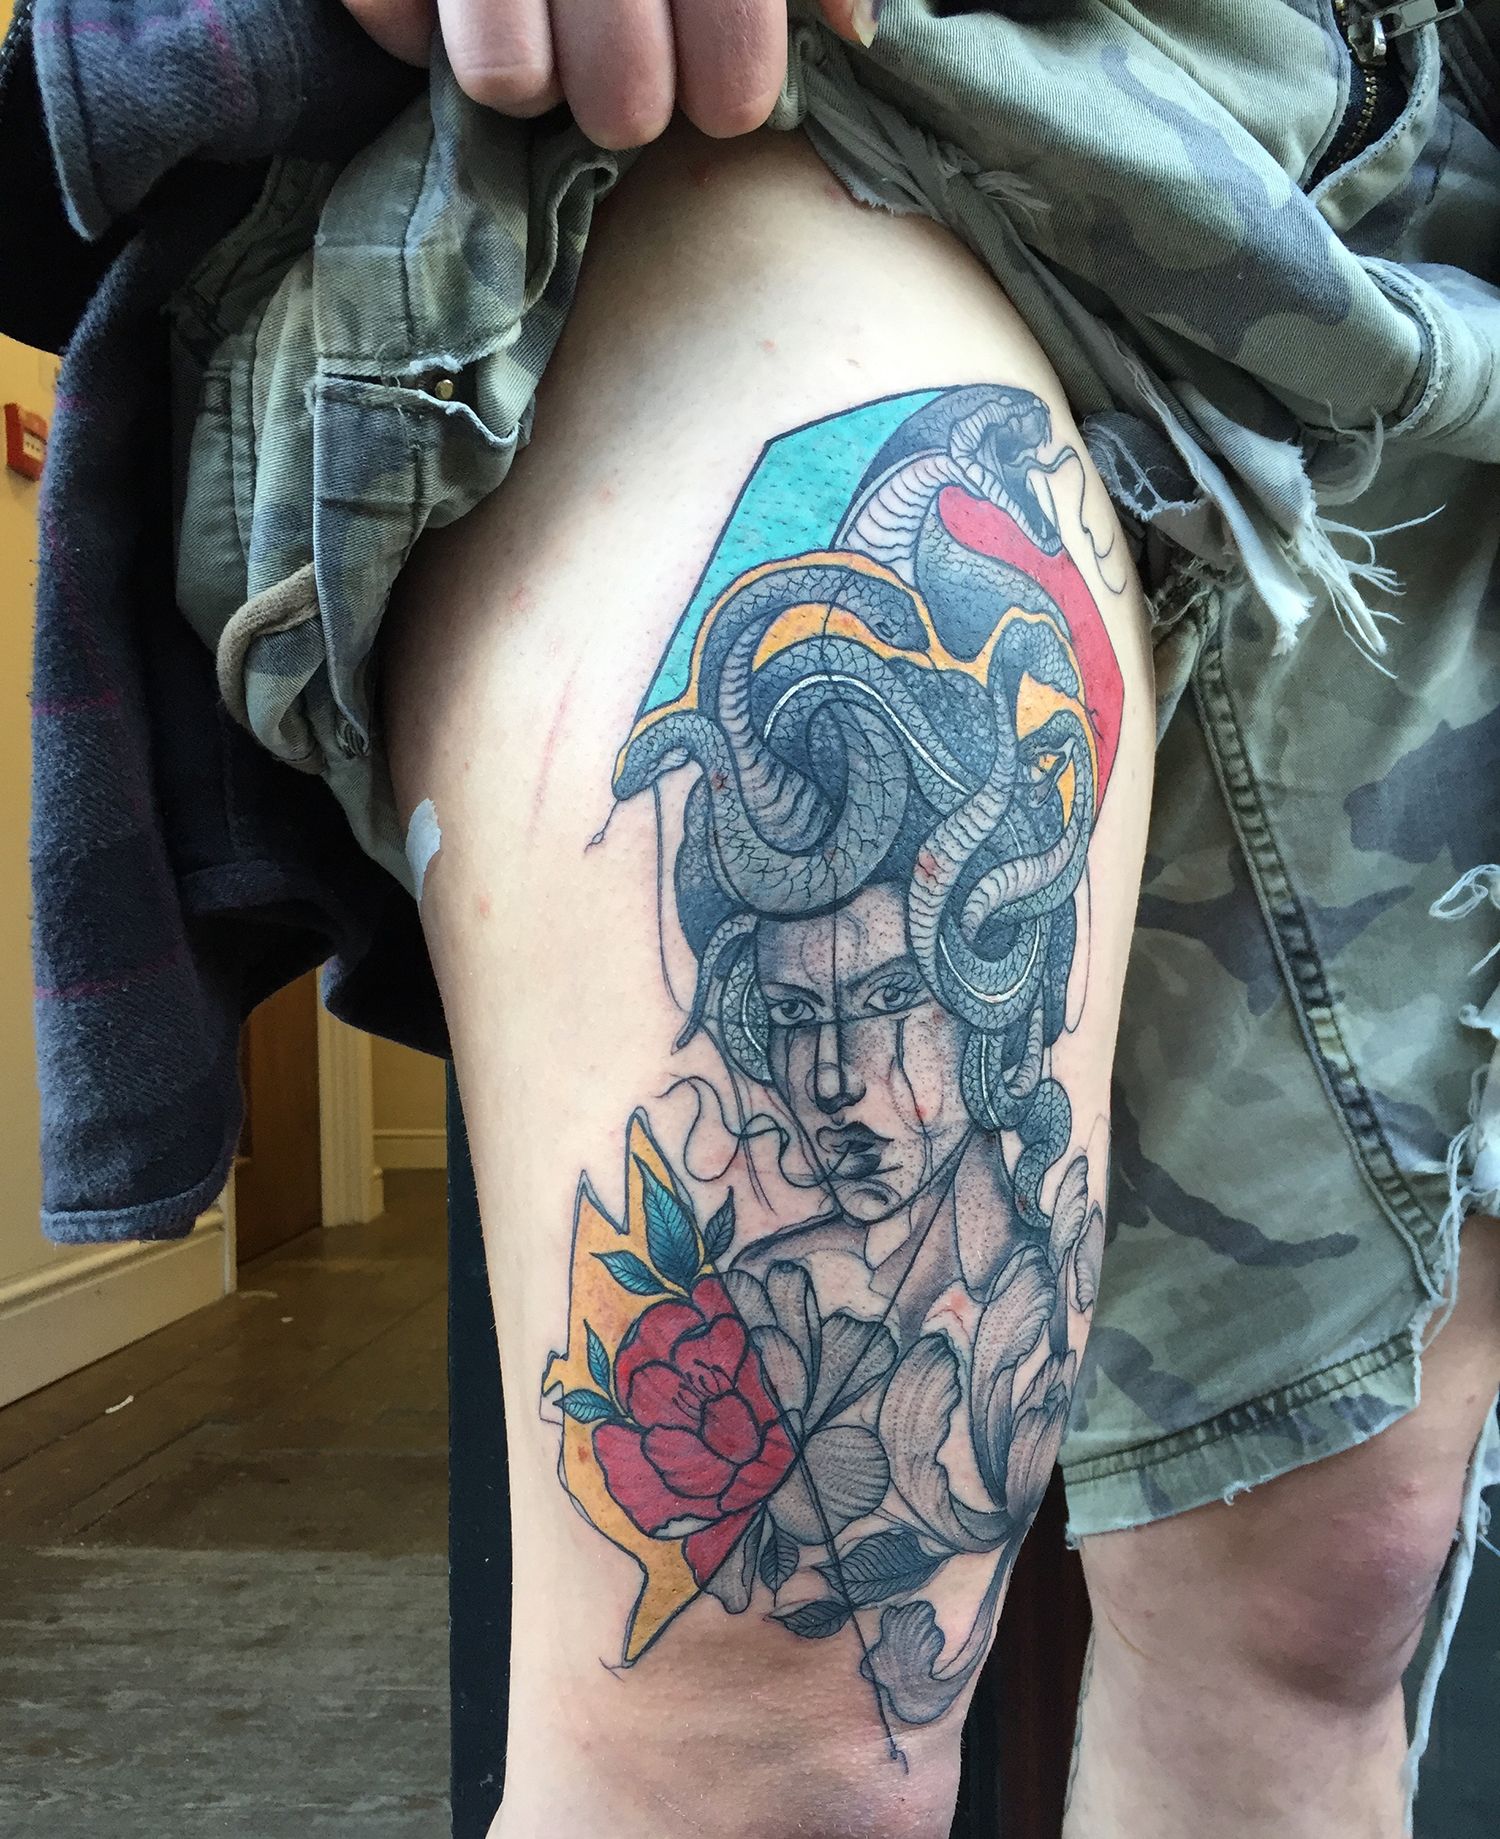 Medusa tattoo on thigh, illustration tattoo